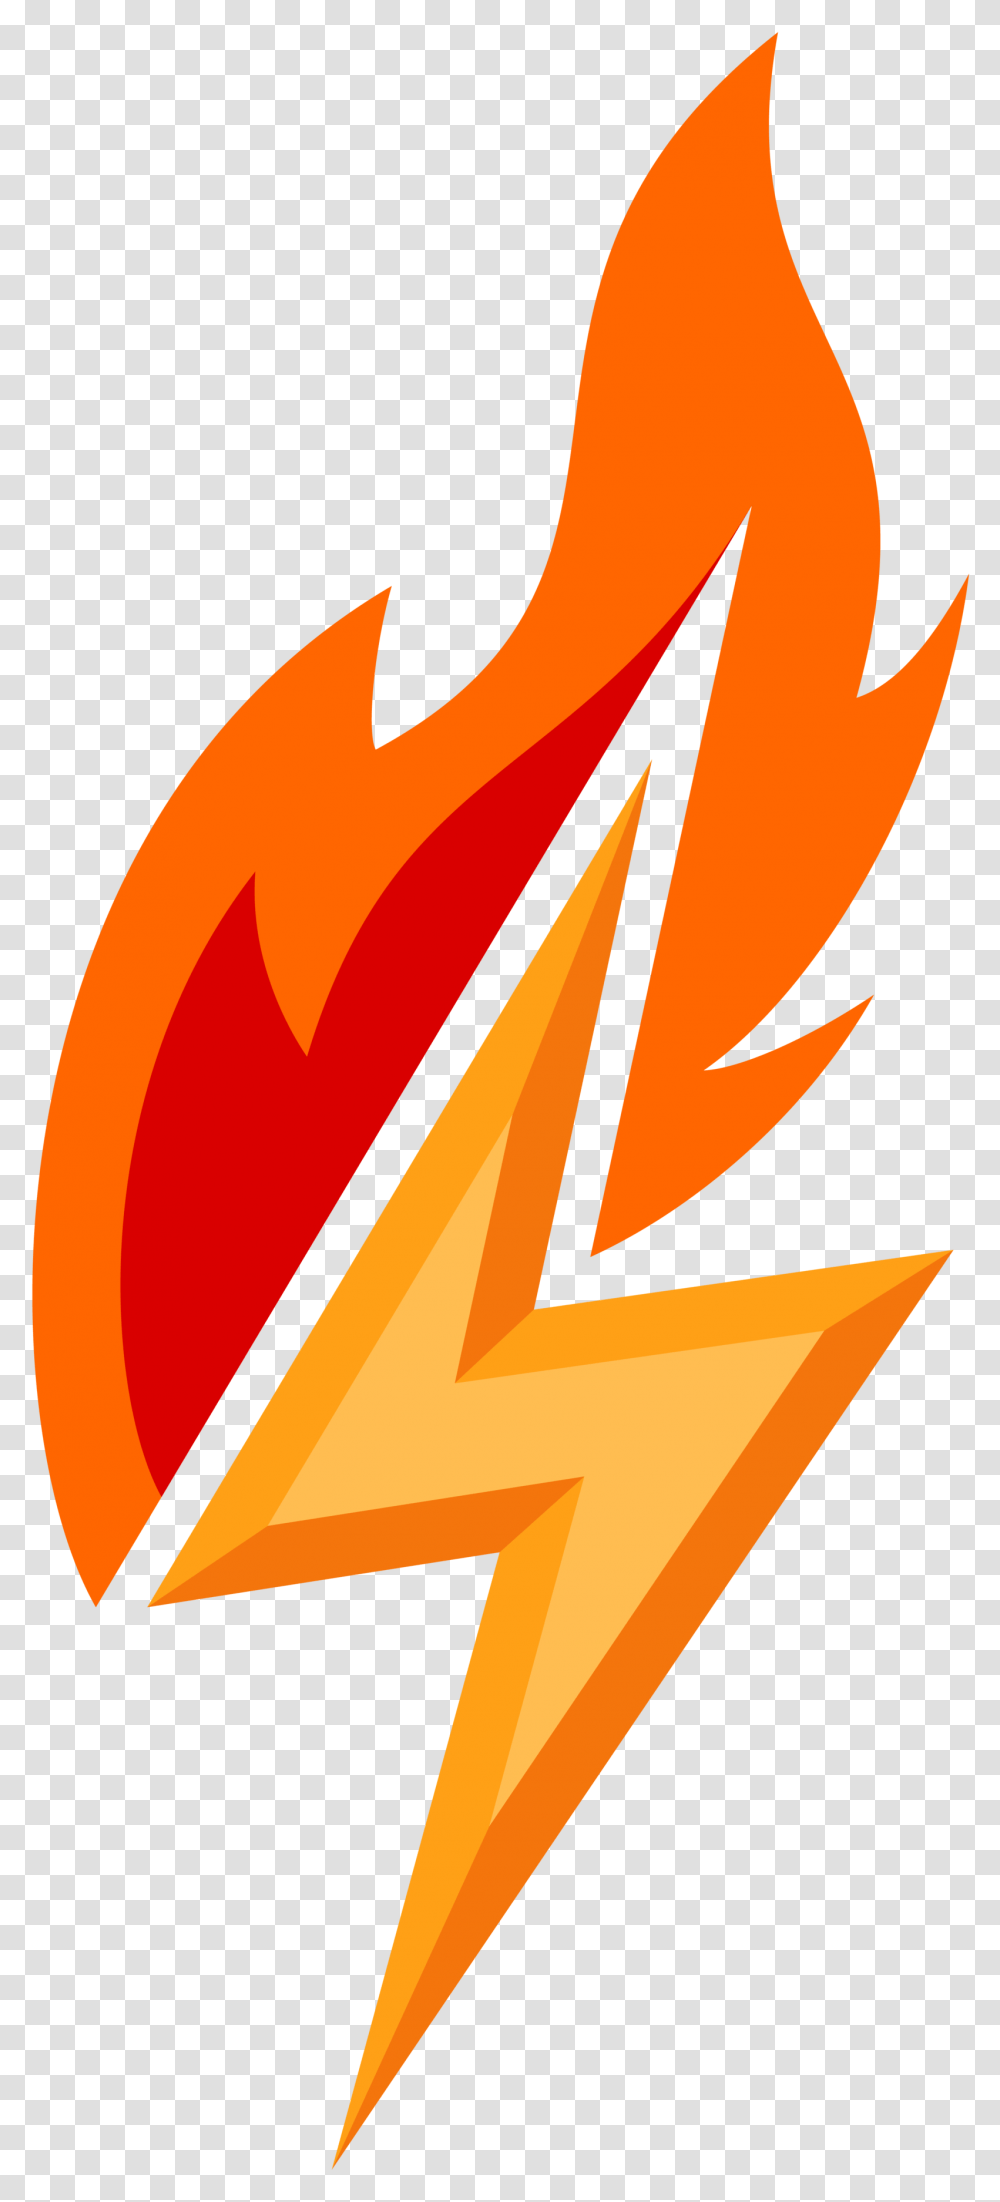 Flame Bolt Flame Bolt Lightning Bolt With Flames, Logo, Number Transparent Png